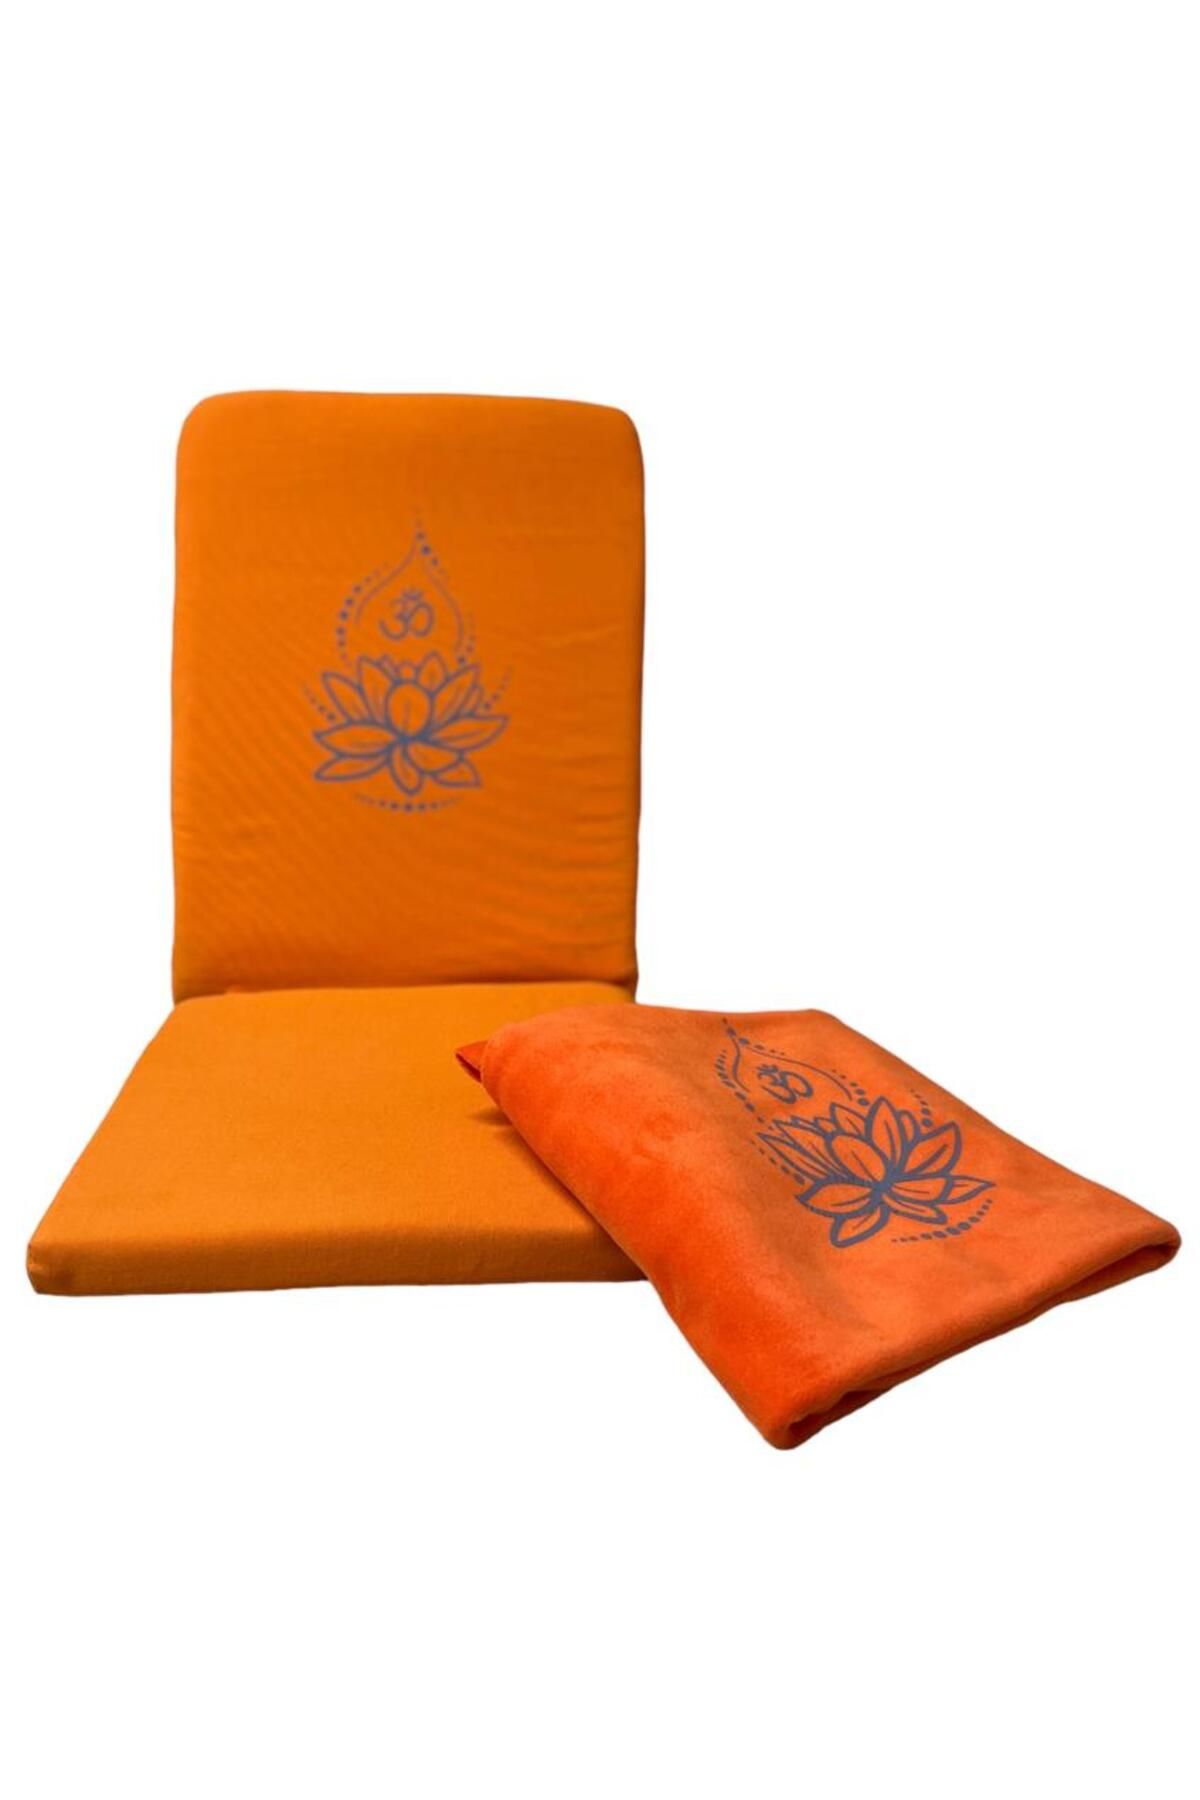 YOGAEZO Lotus Çiçeği Baskılı Backjack Meditasyon Sandalyesi & Yoga Battaniyesi İkili Set